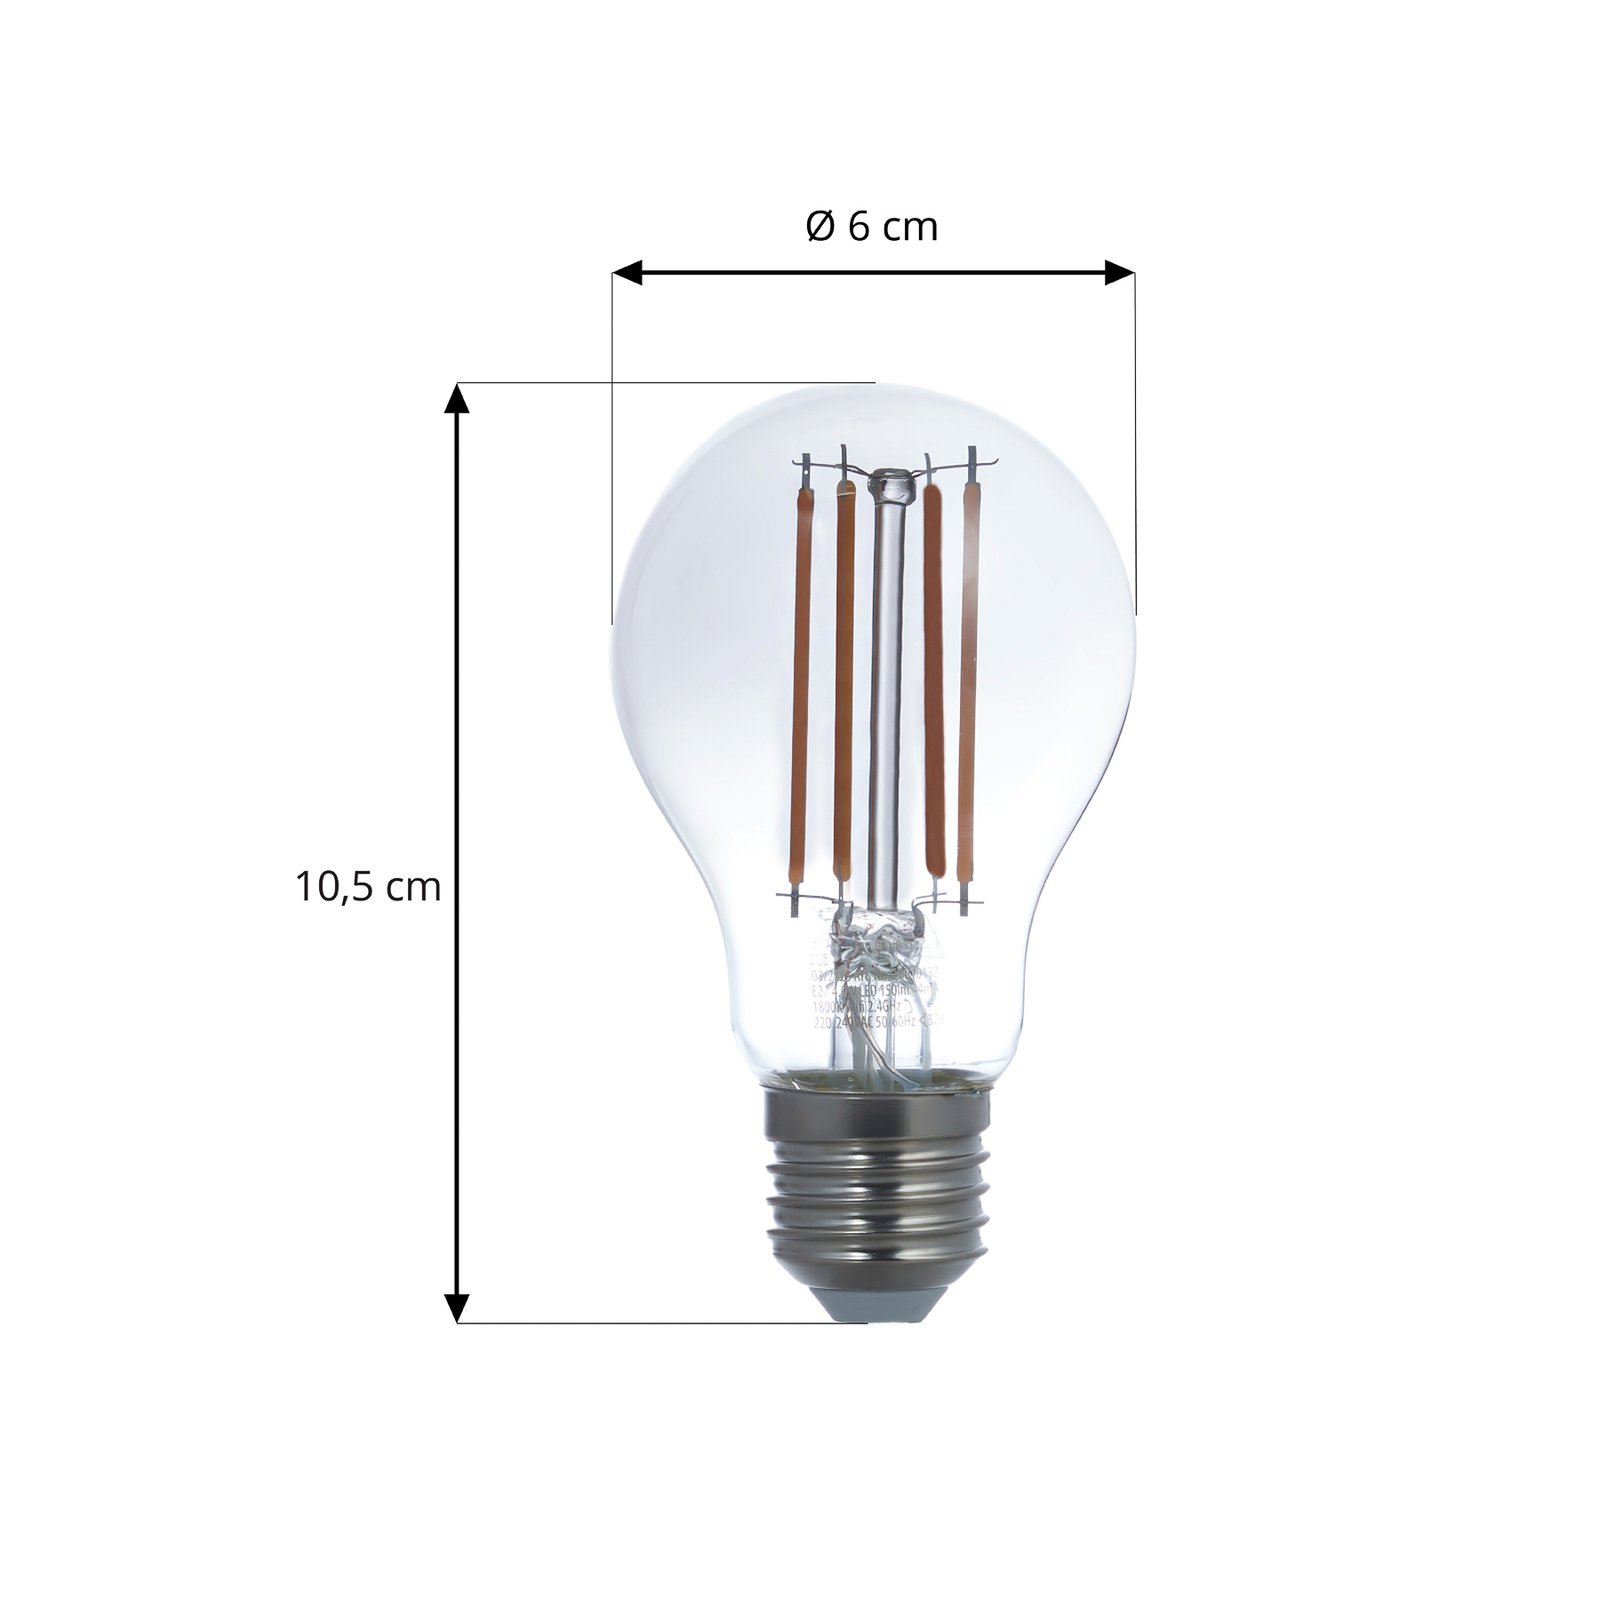 LUUMR Smart LED hehkulanka, 3-osainen, harmaa, E27, A60, 4.9W, Tuya